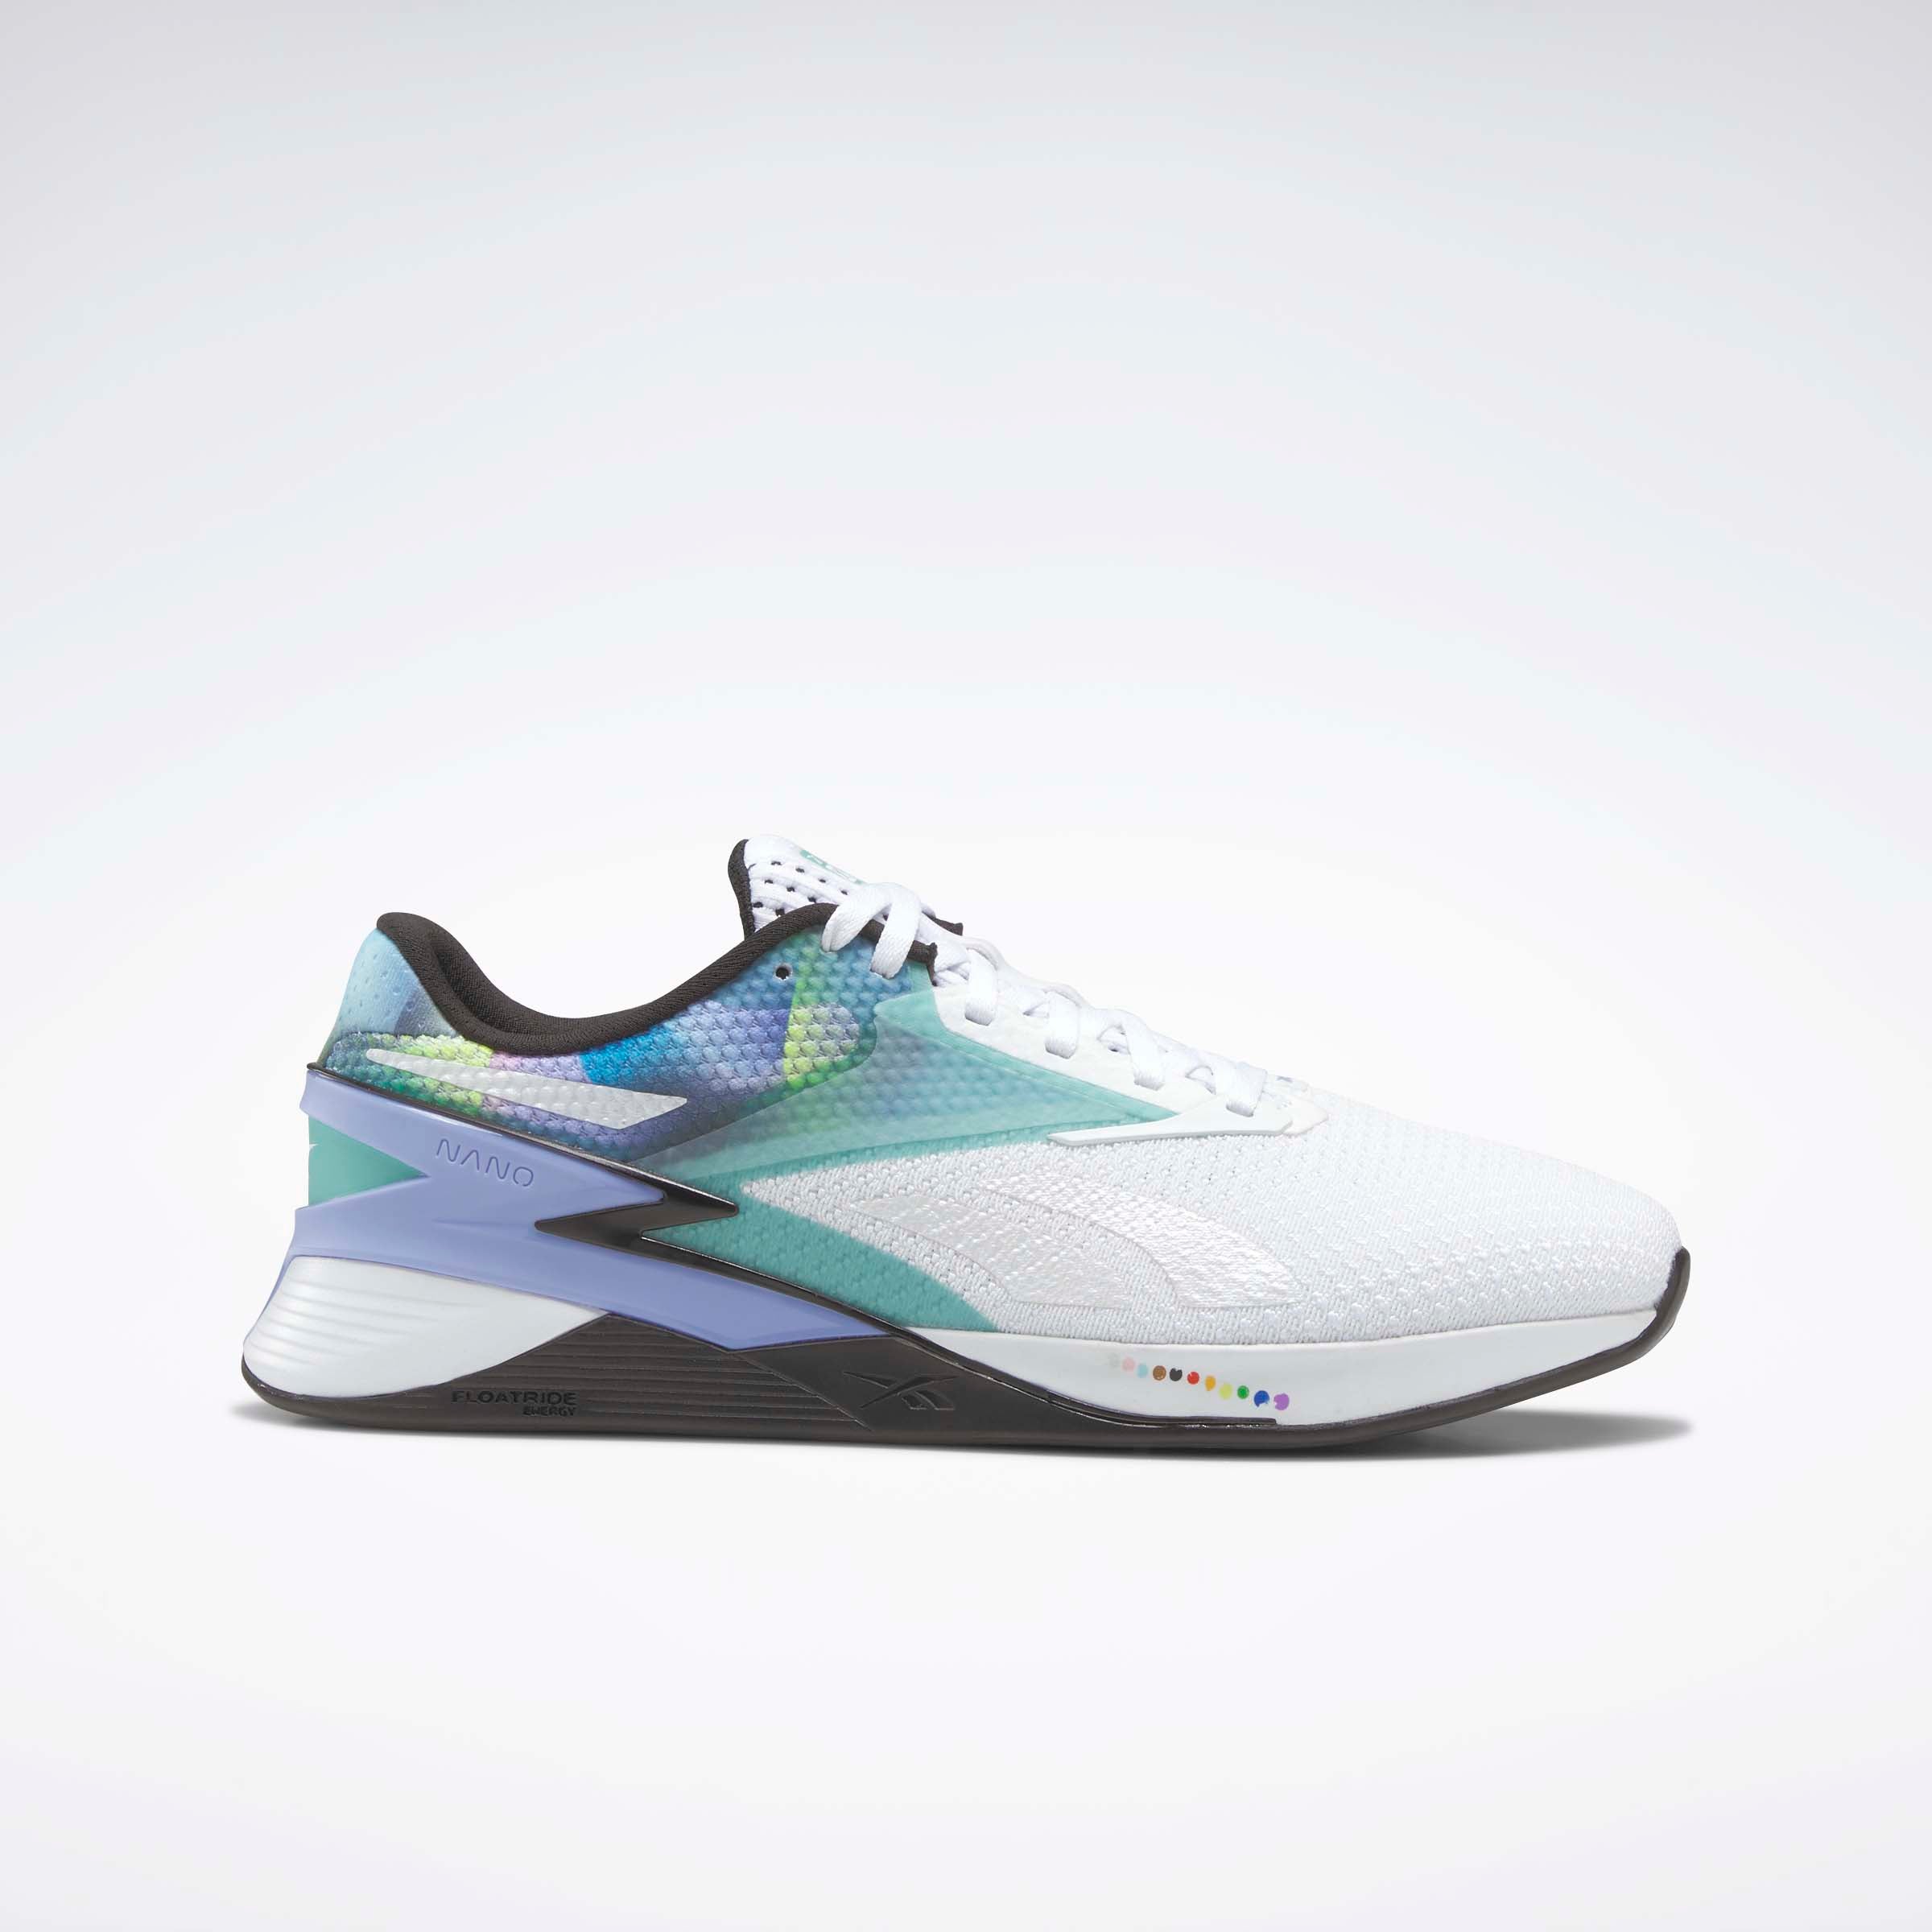 Nano X3 Men's Shoes White/Semi Teal/Lilac Glow – Reebok Australia